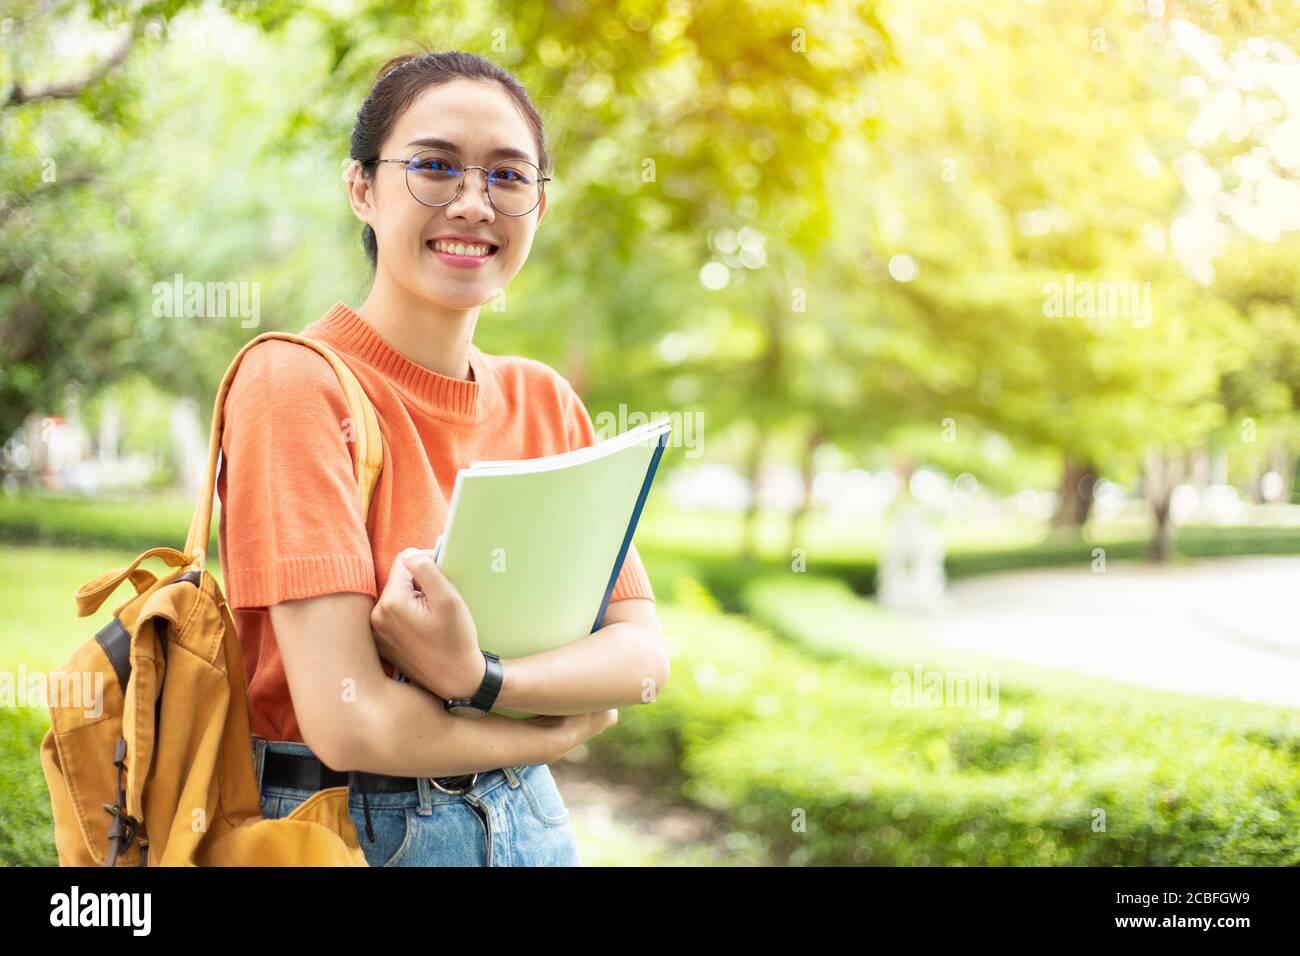 Portrait de la femme asiatique nerd fille jeune fille intelligente heureux sourire avec des verres au parc vert en plein air dans le campus universitaire avec copyspace Banque D'Images